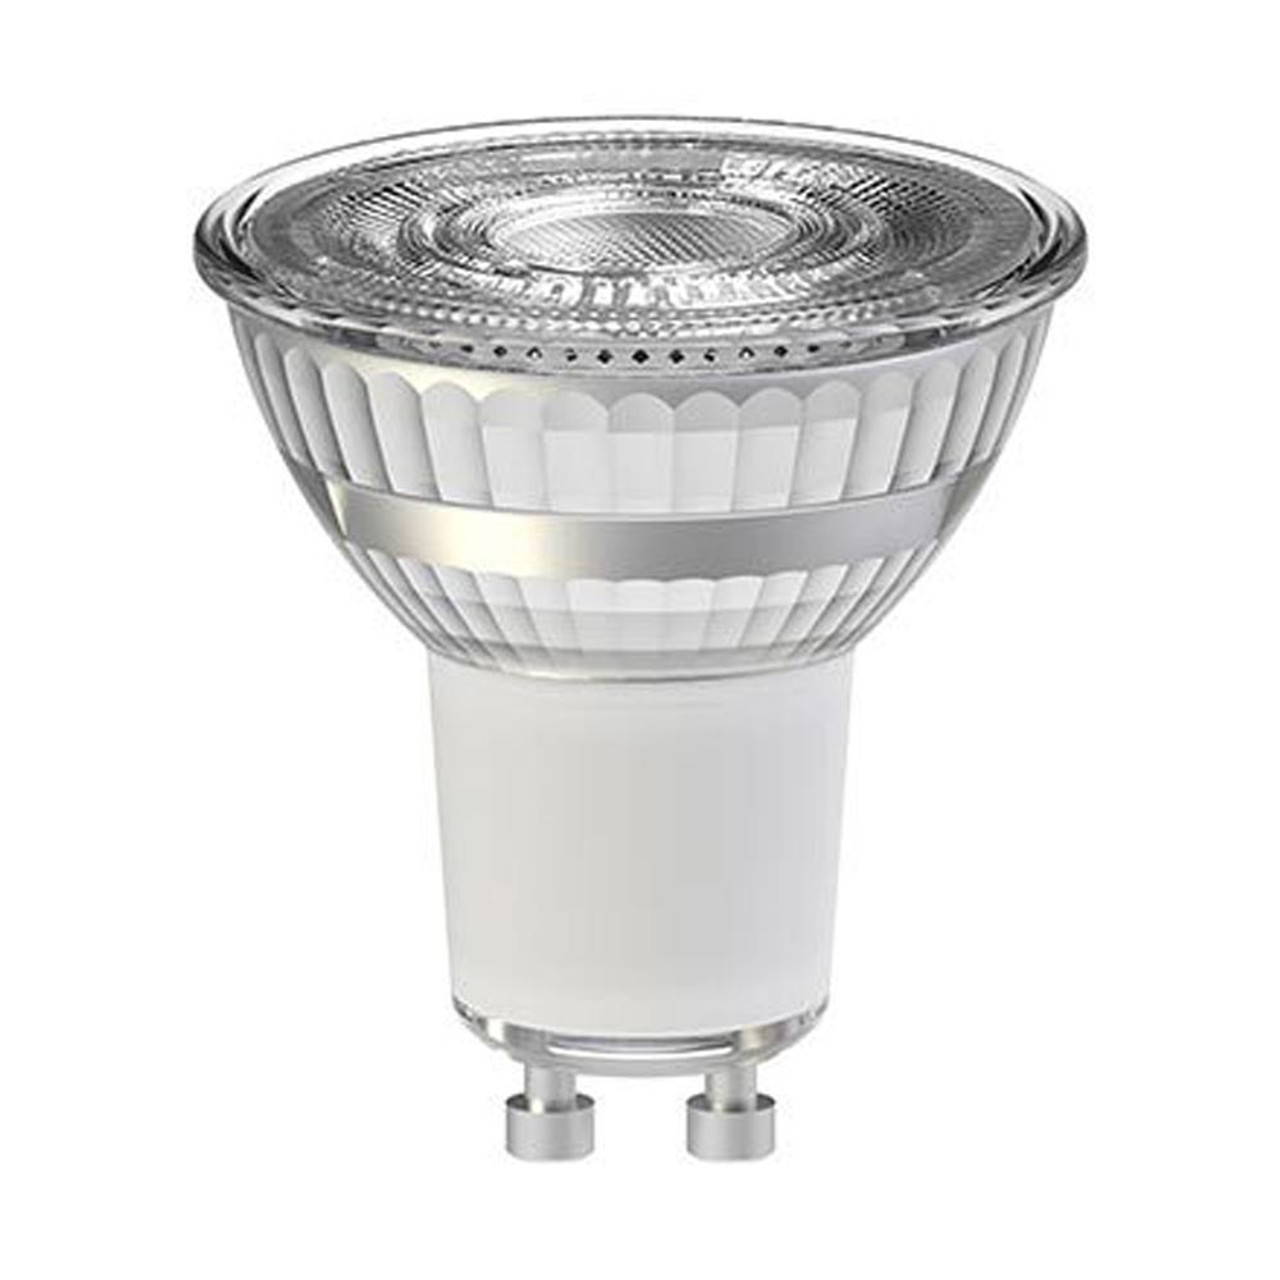 Tungsram LED GU10 6.8W (70W) Cool White 35 Degrees RA90 Dimmable